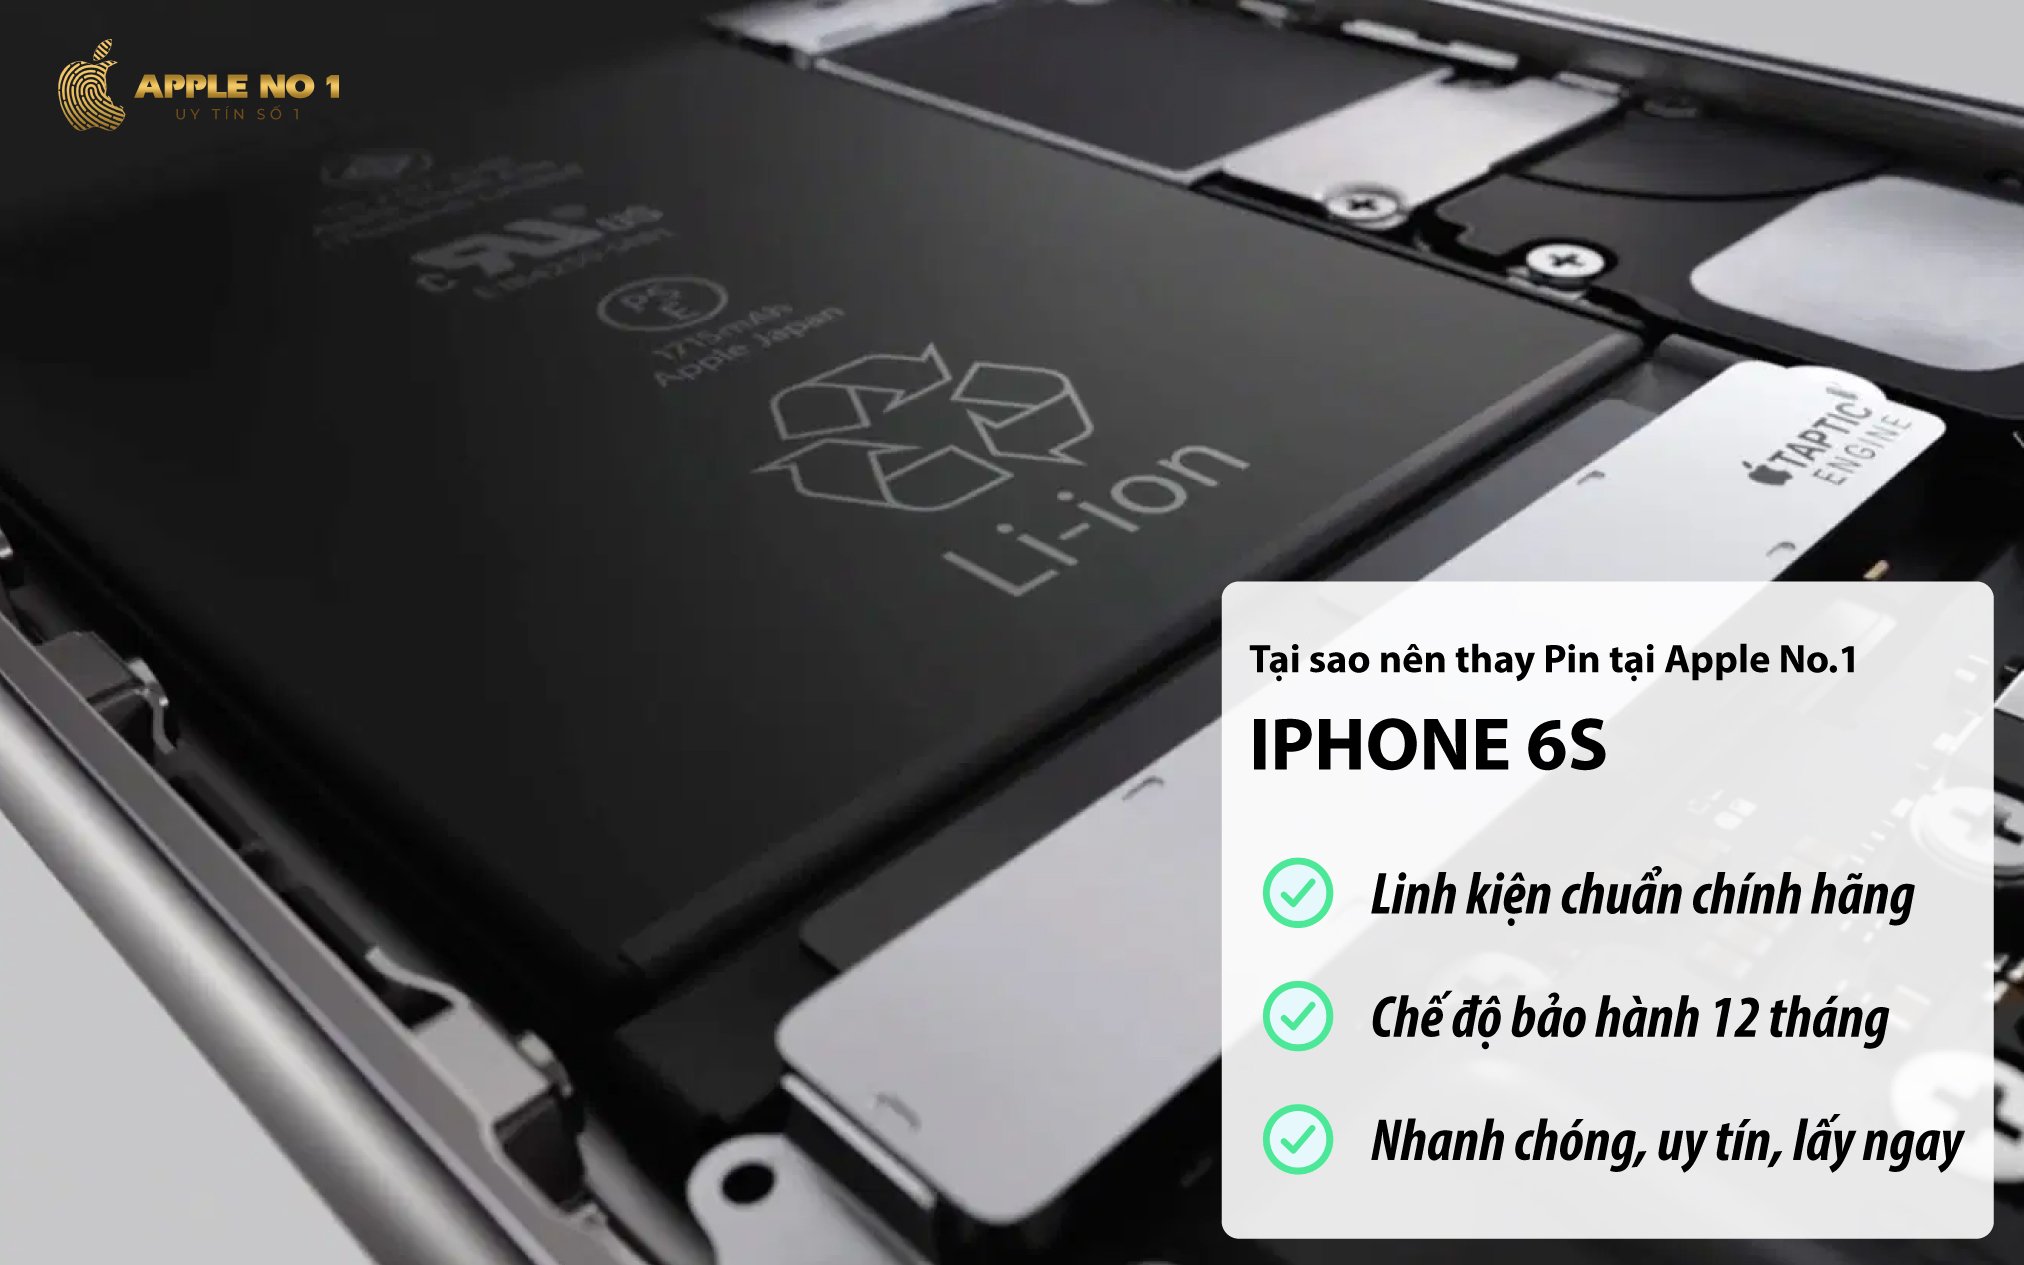 Thay pin iPhone 6S dung luong chuan chinh hang tai Apple No.1